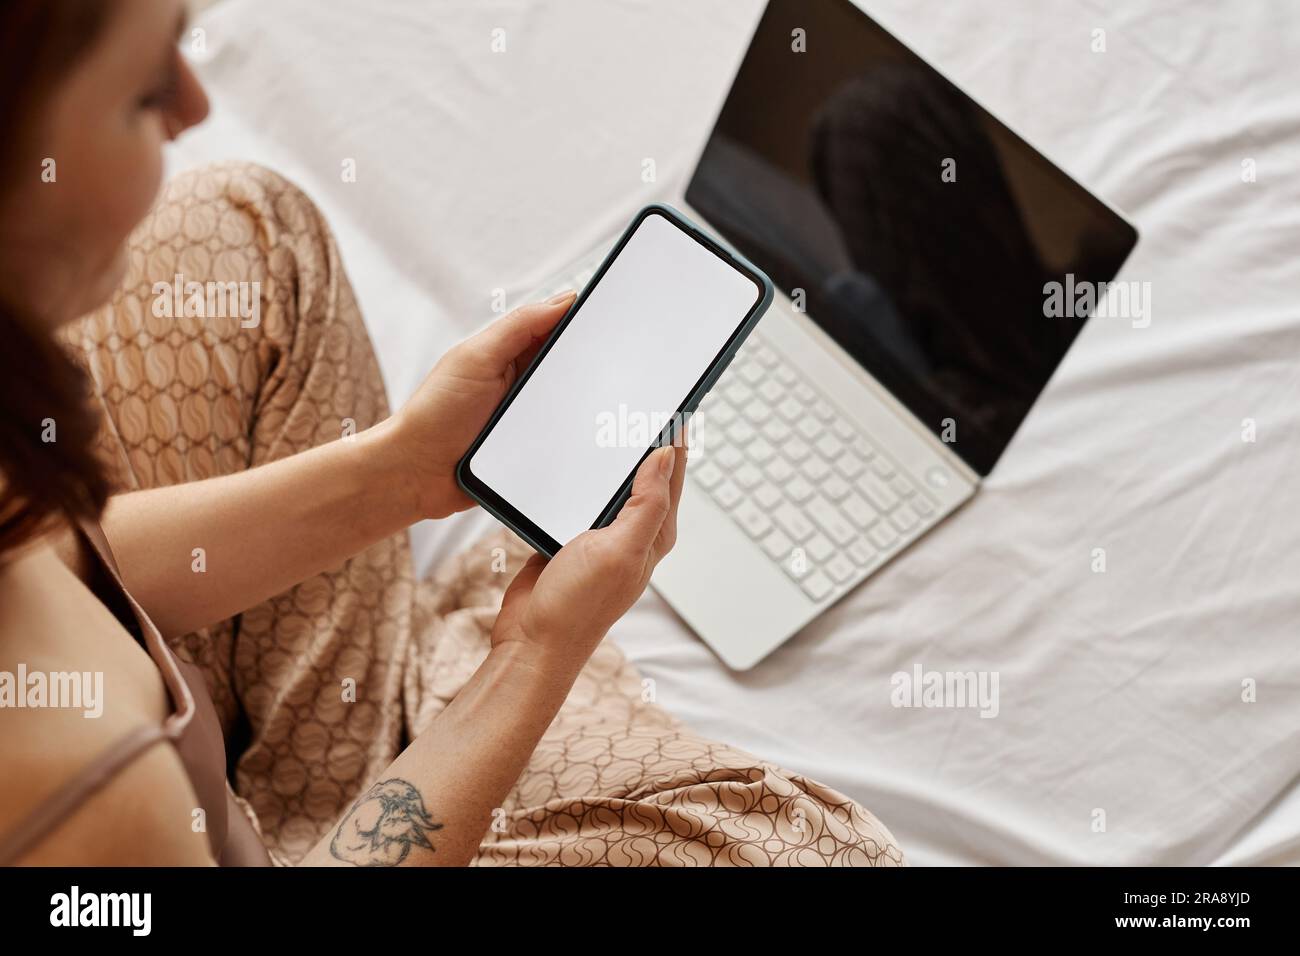 Minimale Draufsicht auf junge Frau mit Laptop und Smartphone, leerer weißer Bildschirm auf dem Bett, Kopierbereich Stockfoto